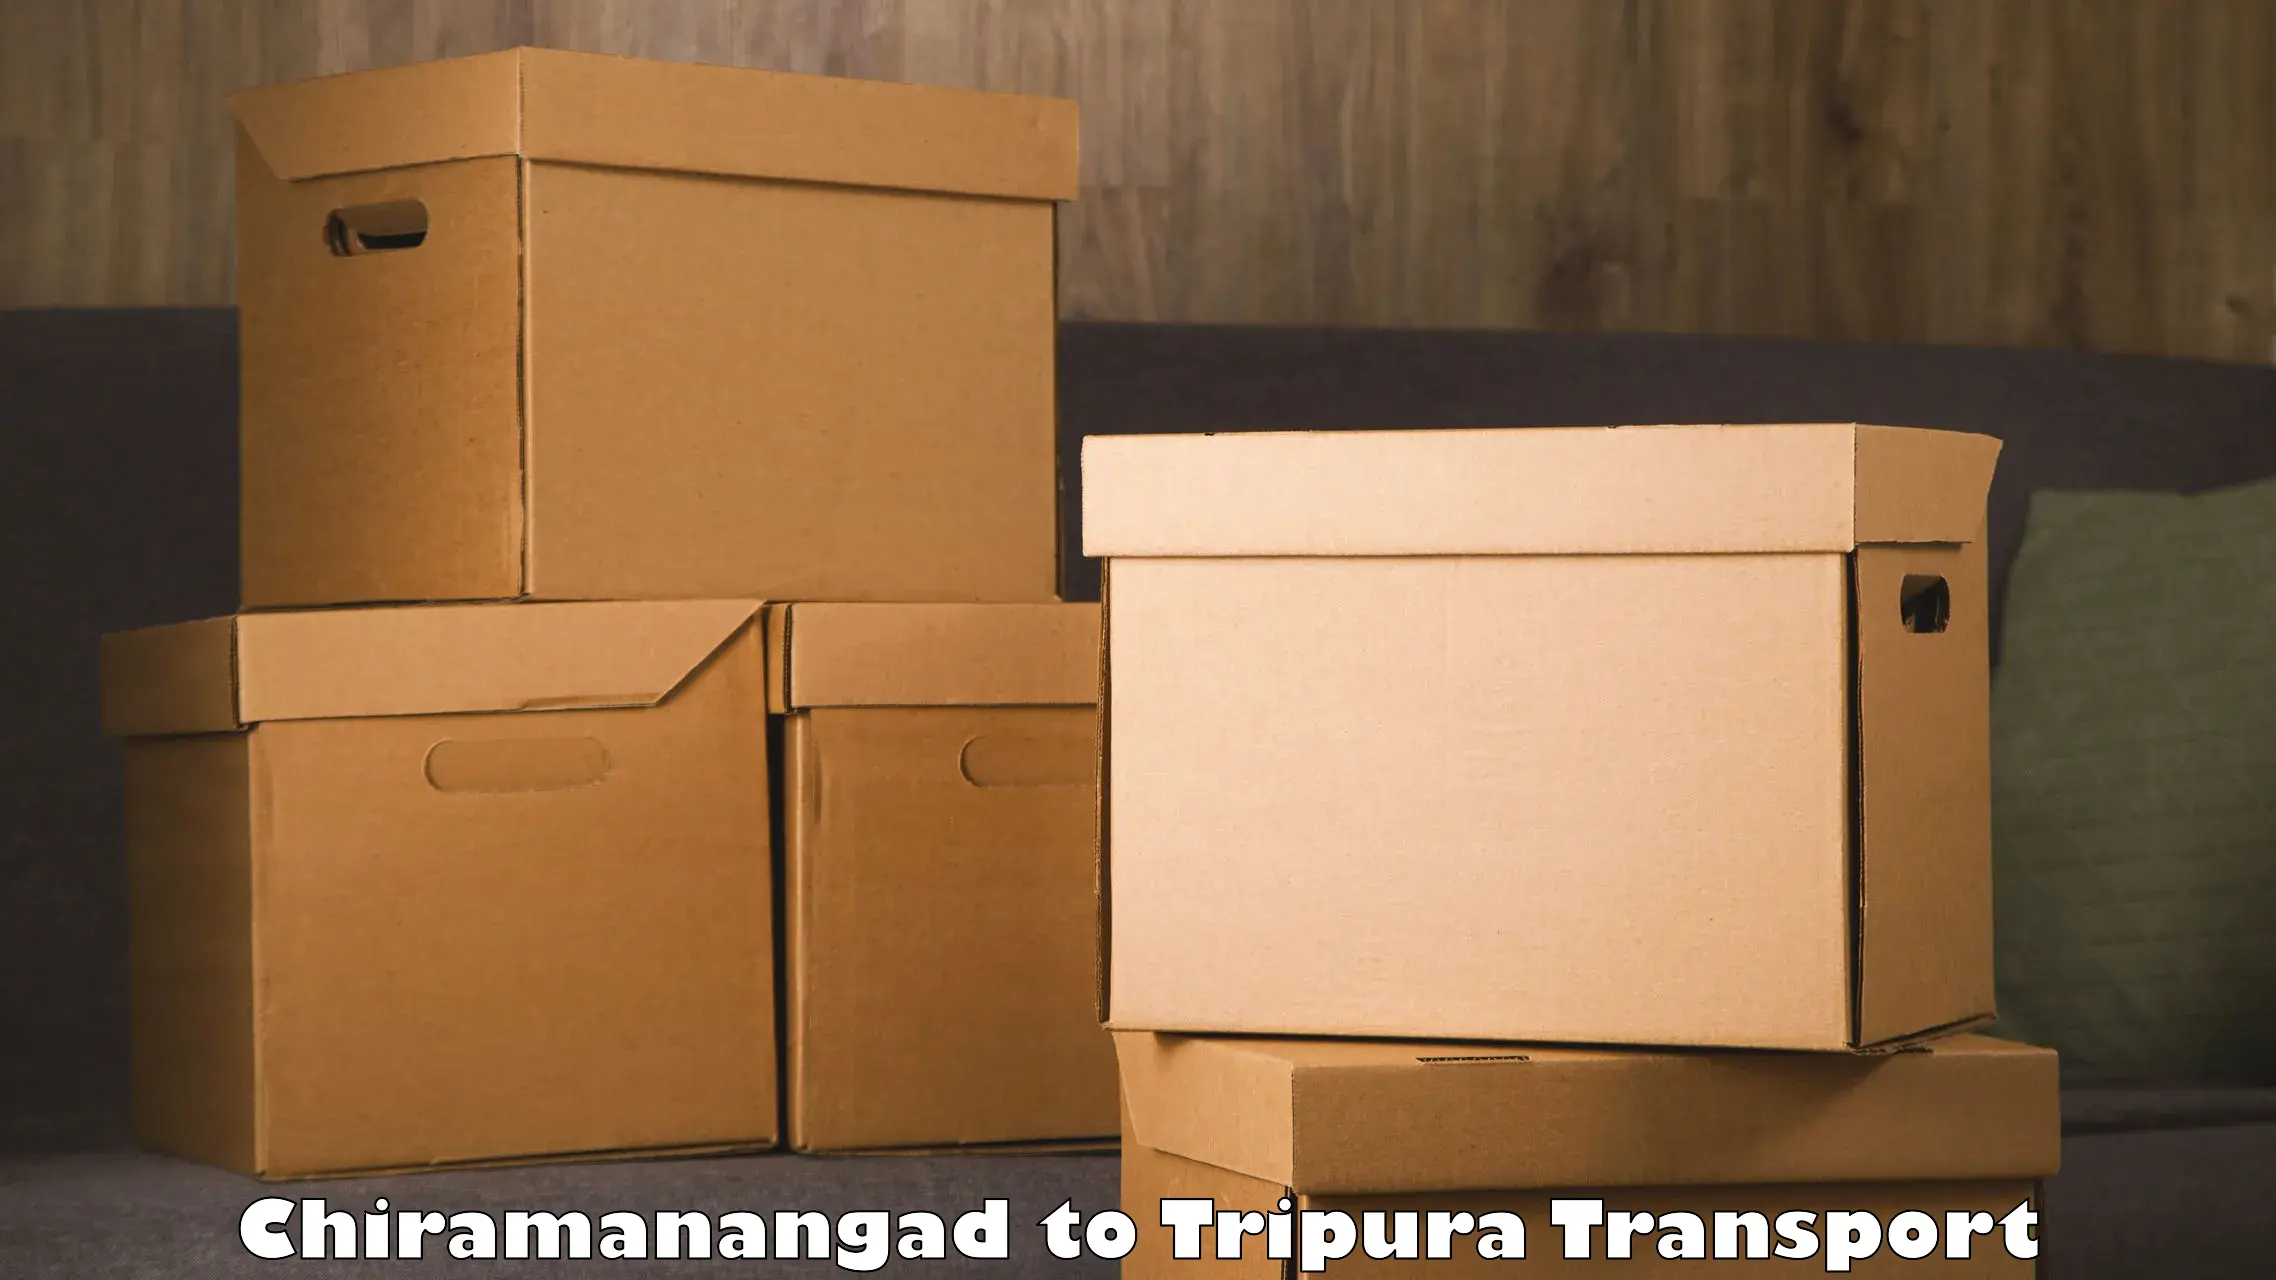 Furniture transport service Chiramanangad to Manughat